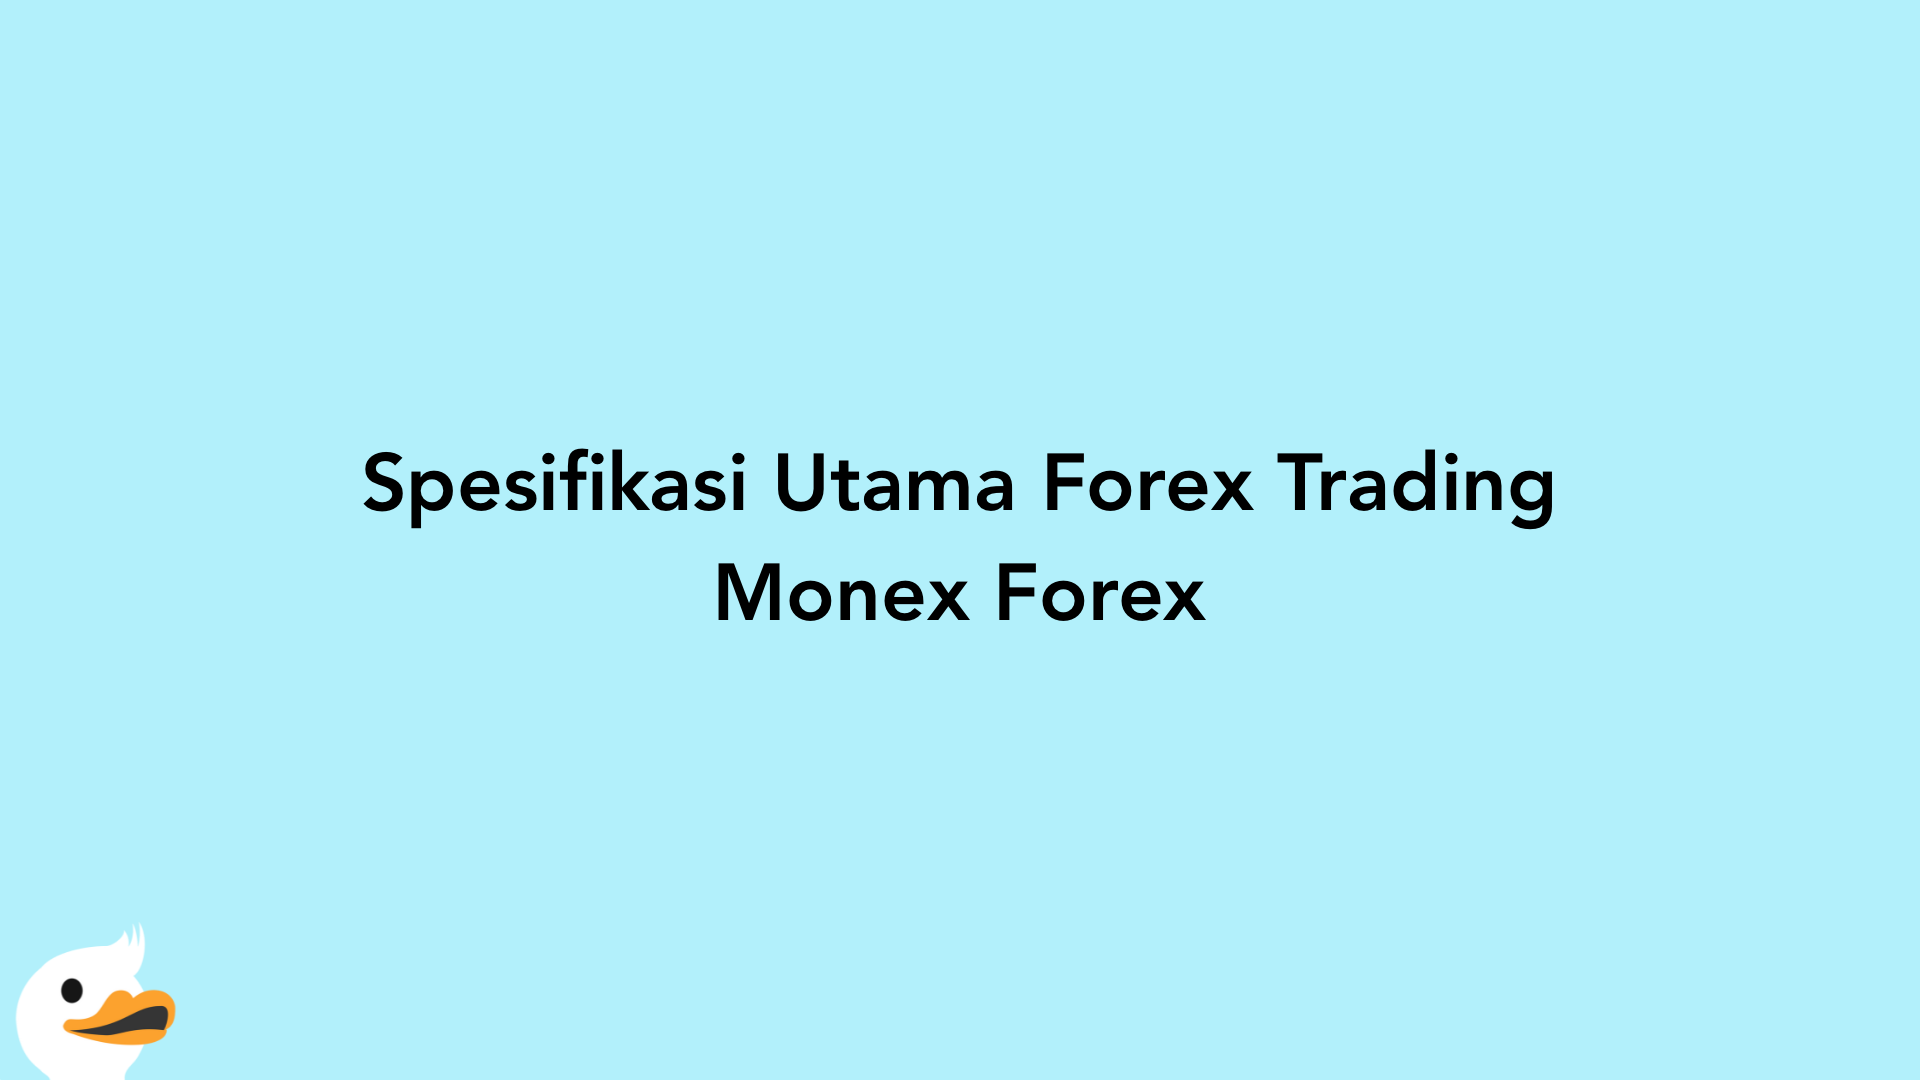 Spesifikasi Utama Forex Trading Monex Forex